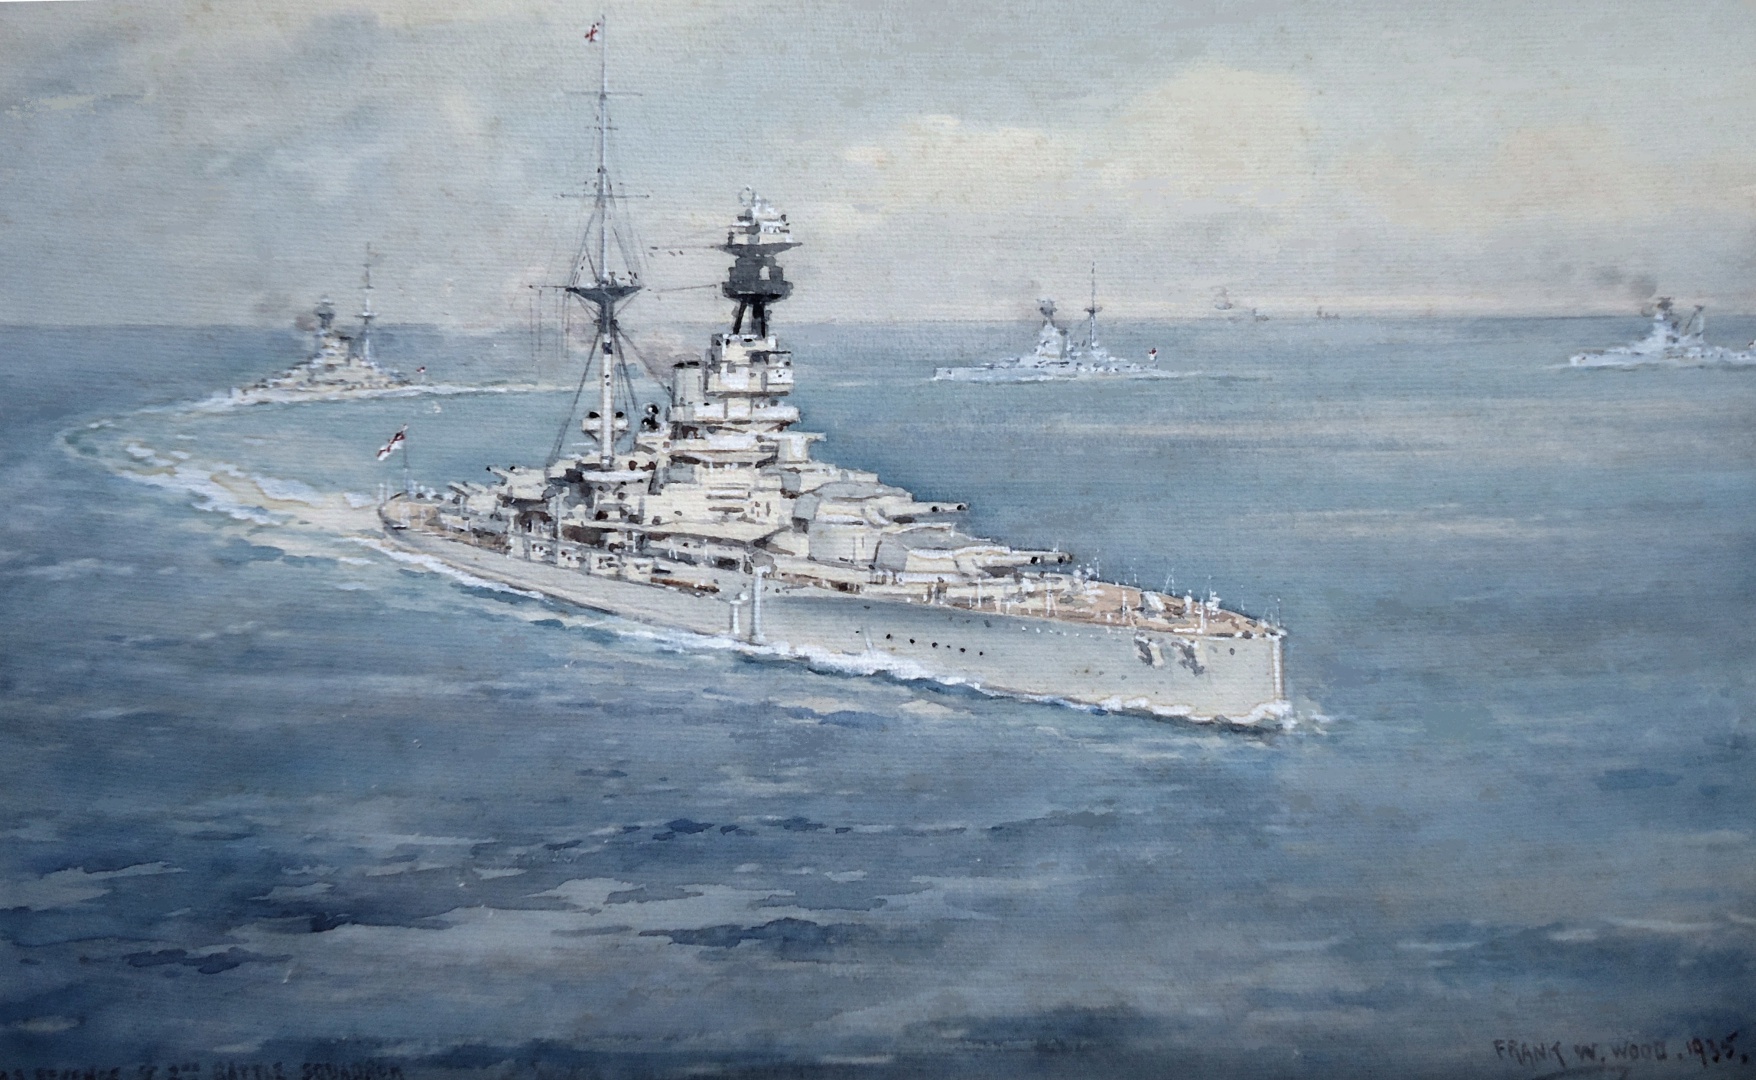 R Class battleships in the Med, 1935